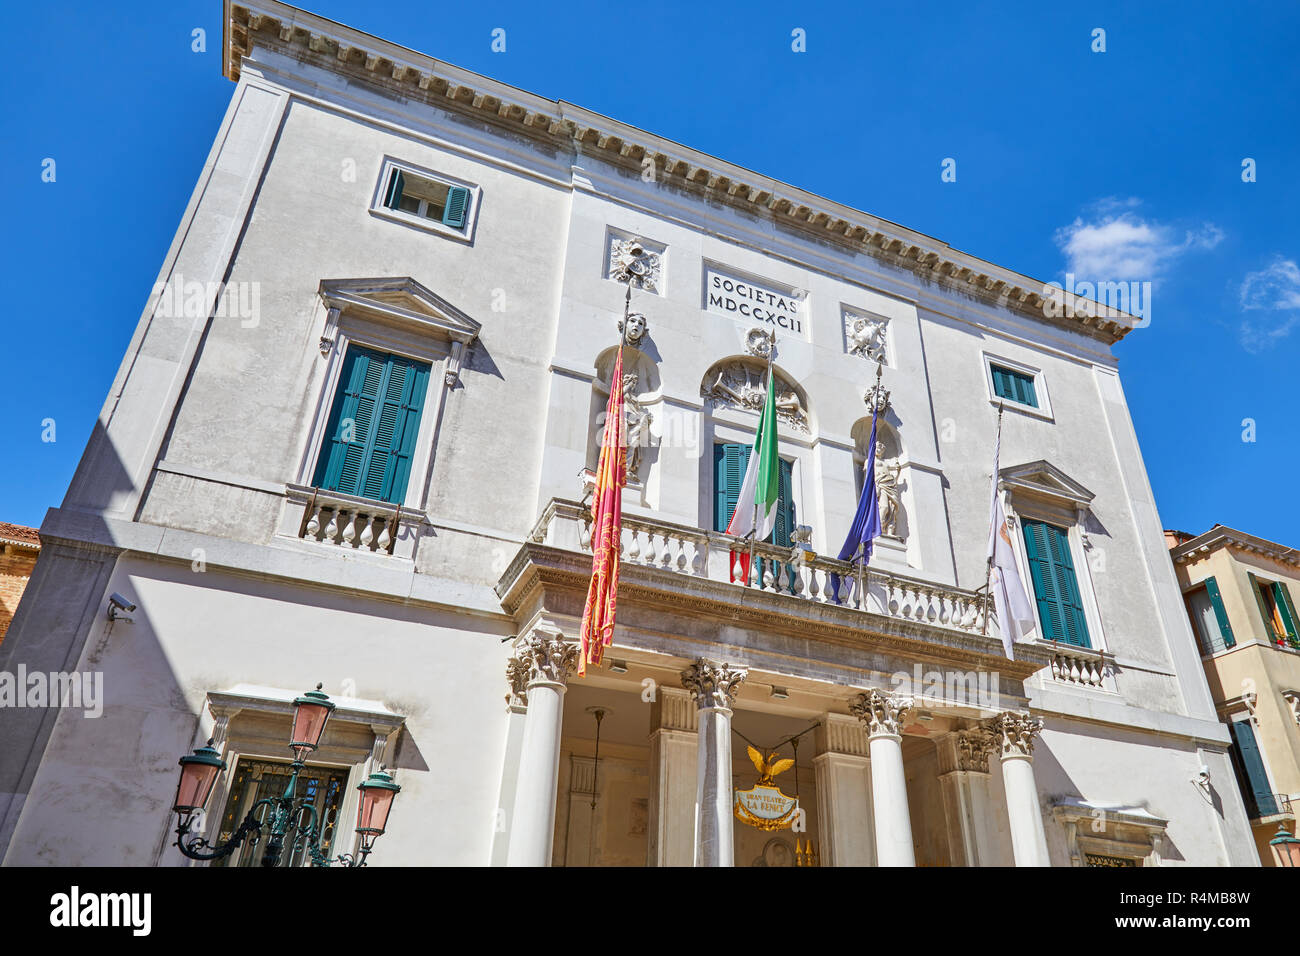 Venecia, Italia - 14 de agosto de 2017: Teatro La Fenice fachada de edificio en un día soleado de verano, el azul claro del cielo en Venecia, Italia Foto de stock